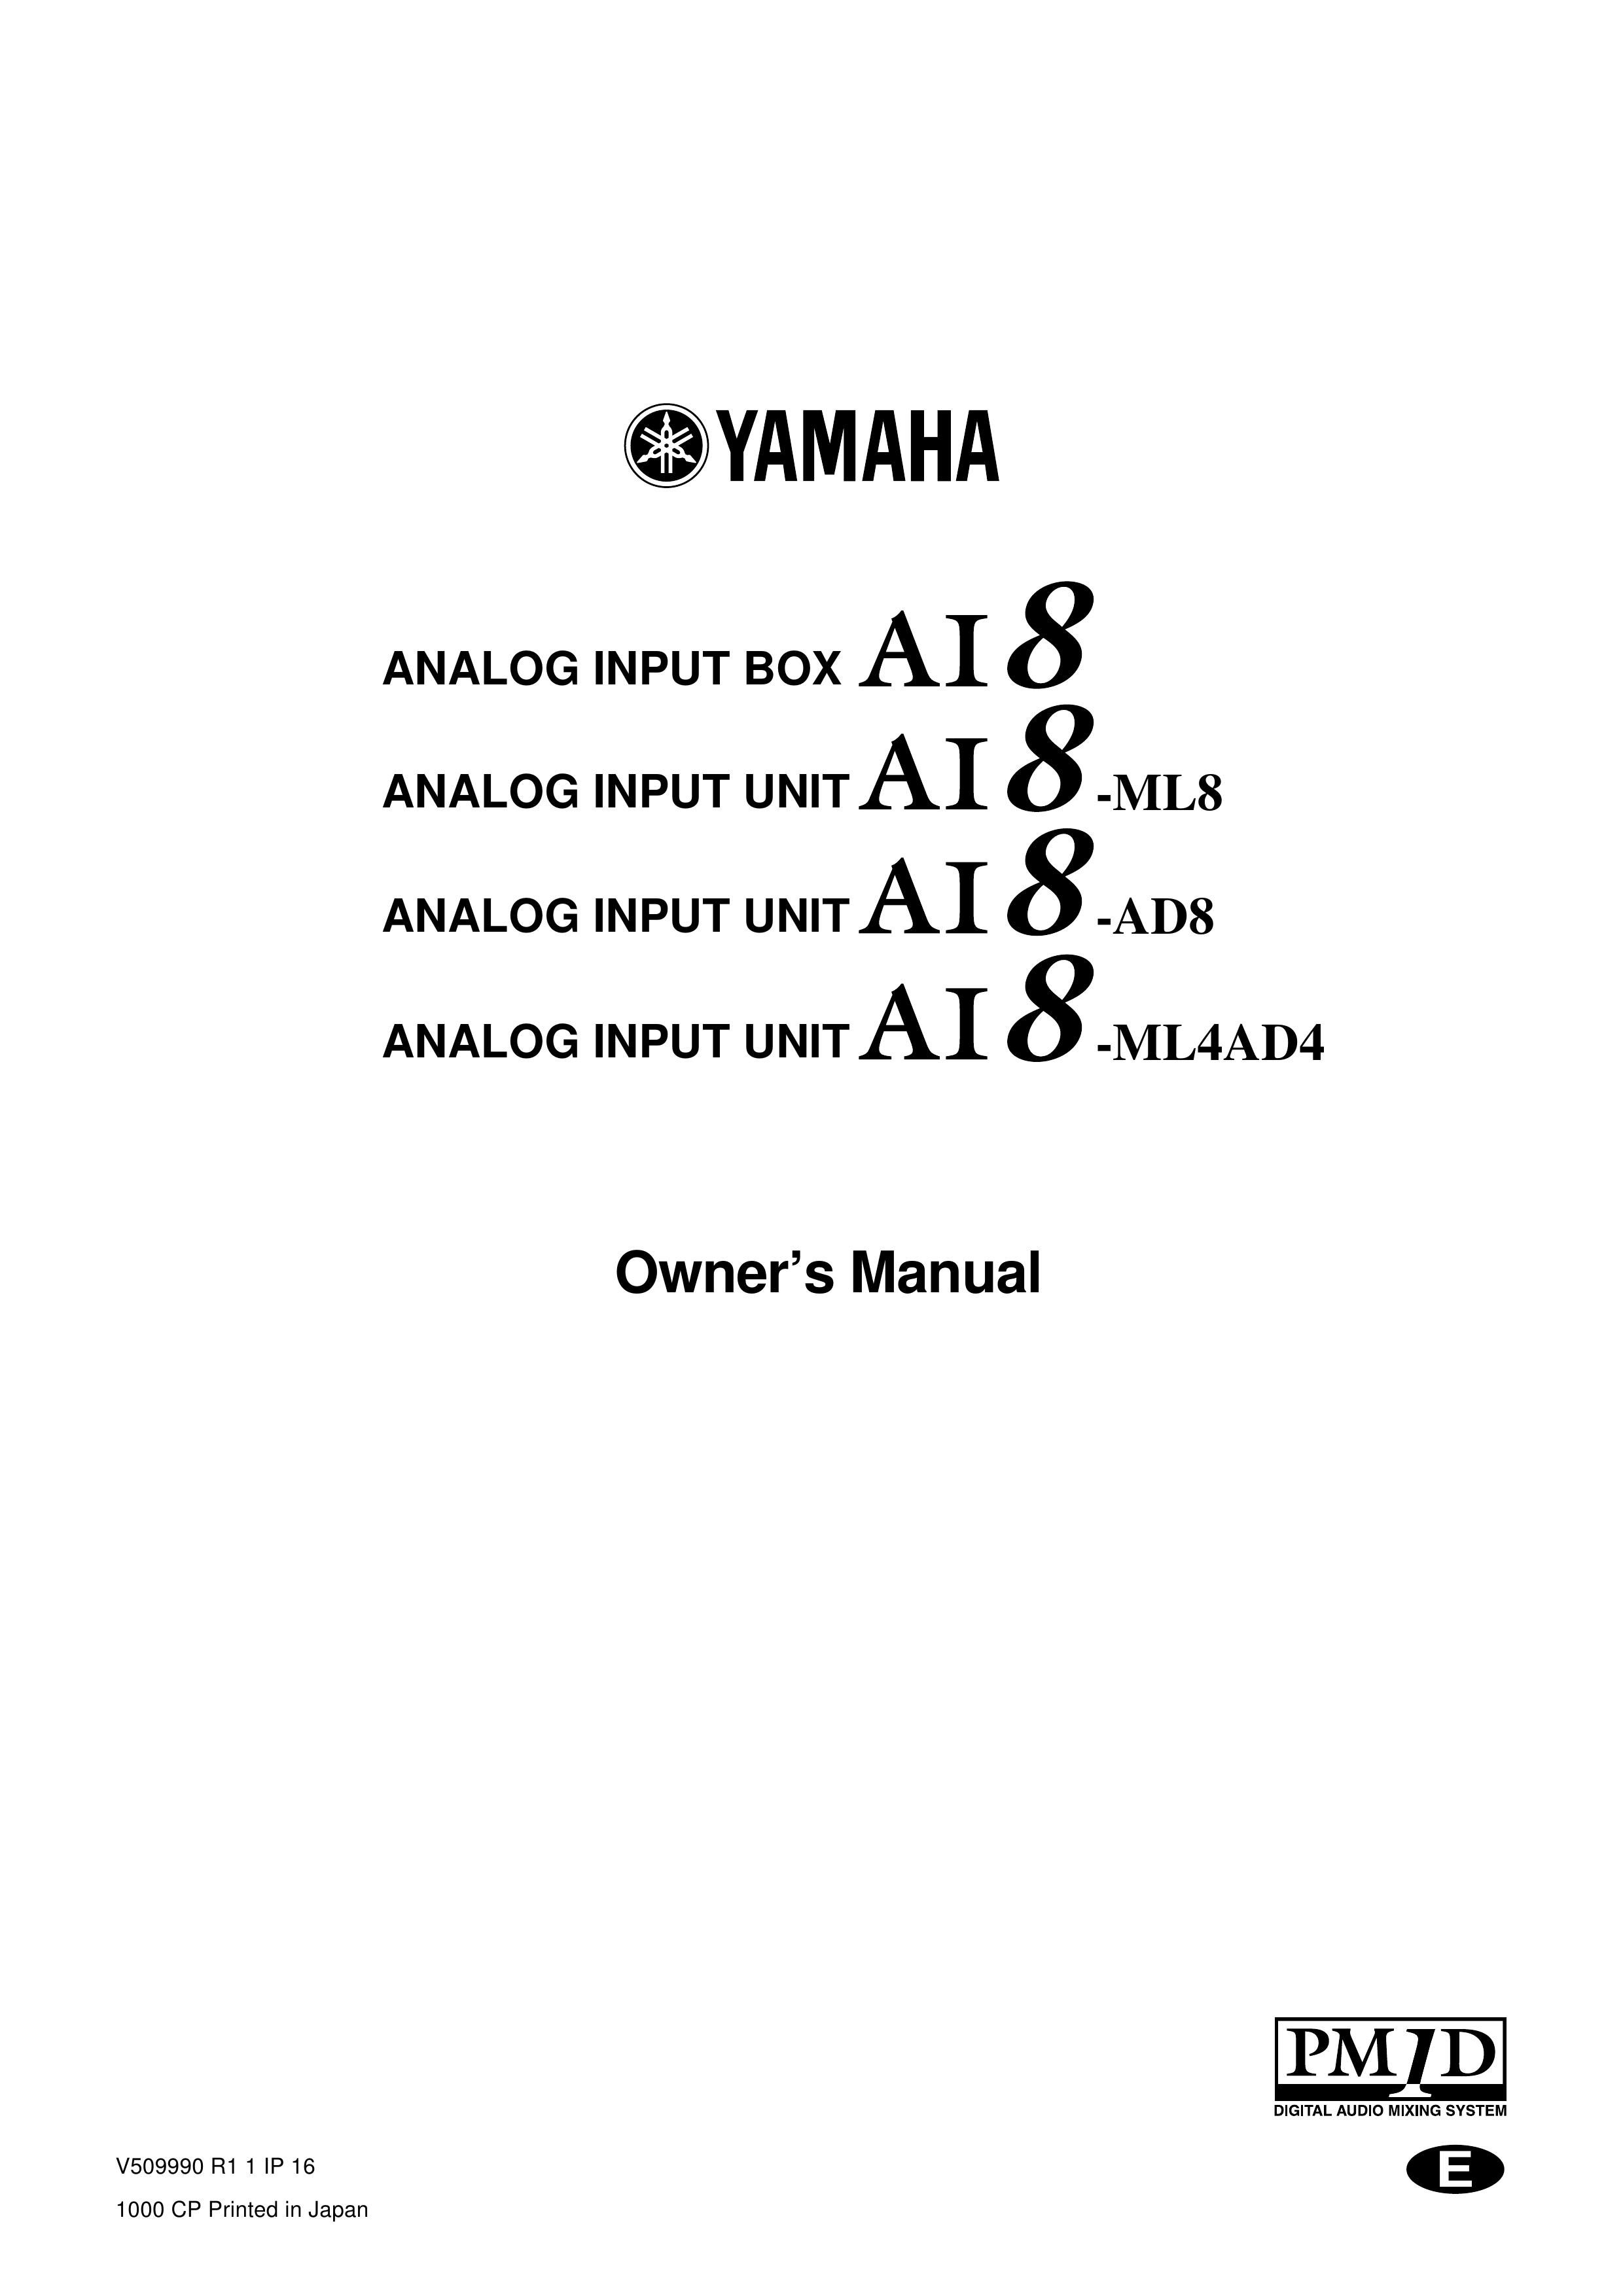 Yamaha AI8 Music Mixer User Manual